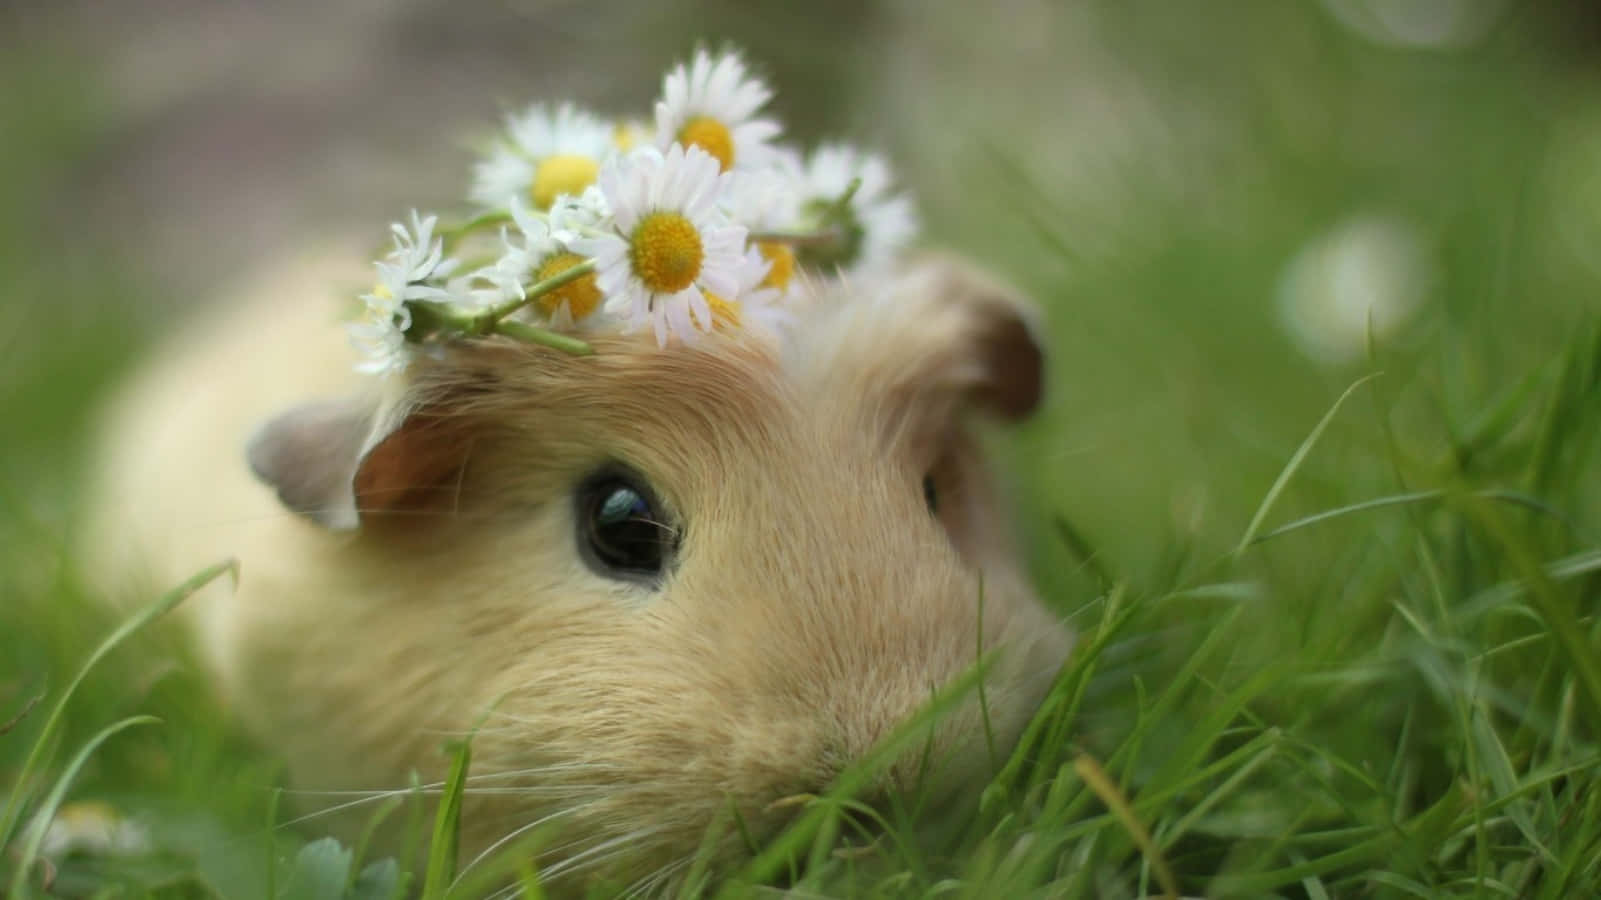 An adorable hamster ready for a hug